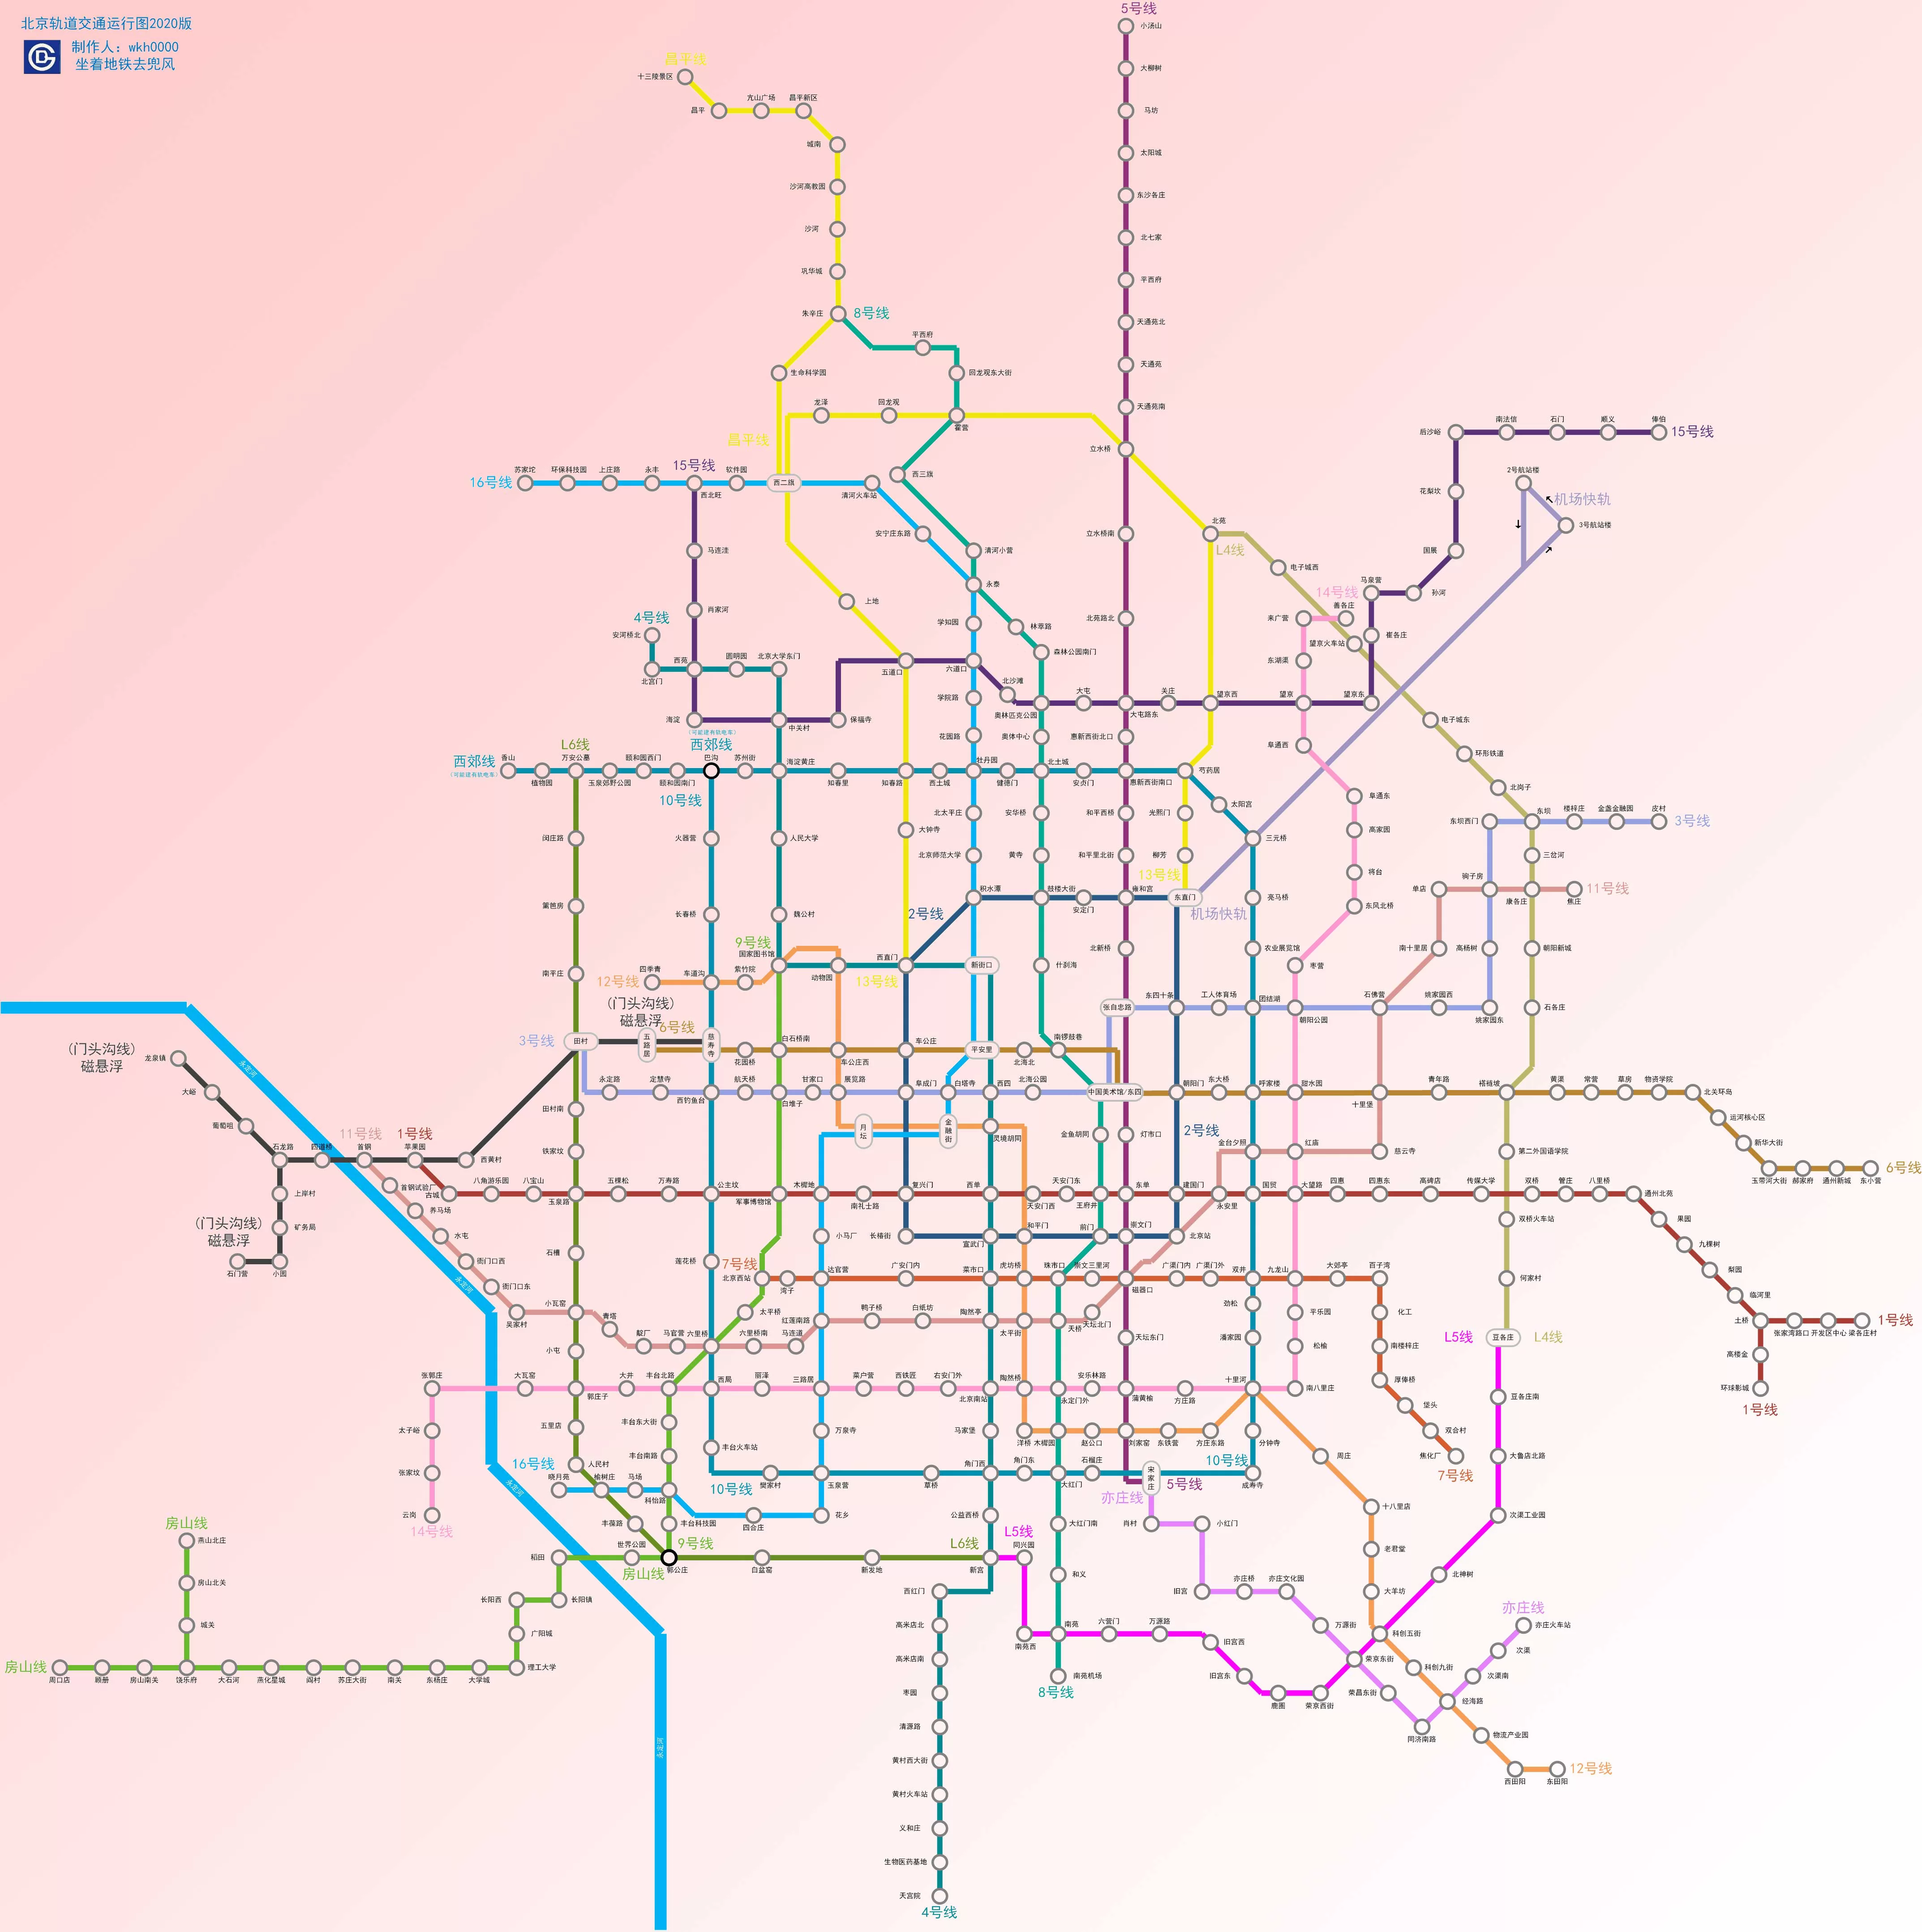 北京轨道交通规划图2020 - 中国交通地图 - 地理教师网图片